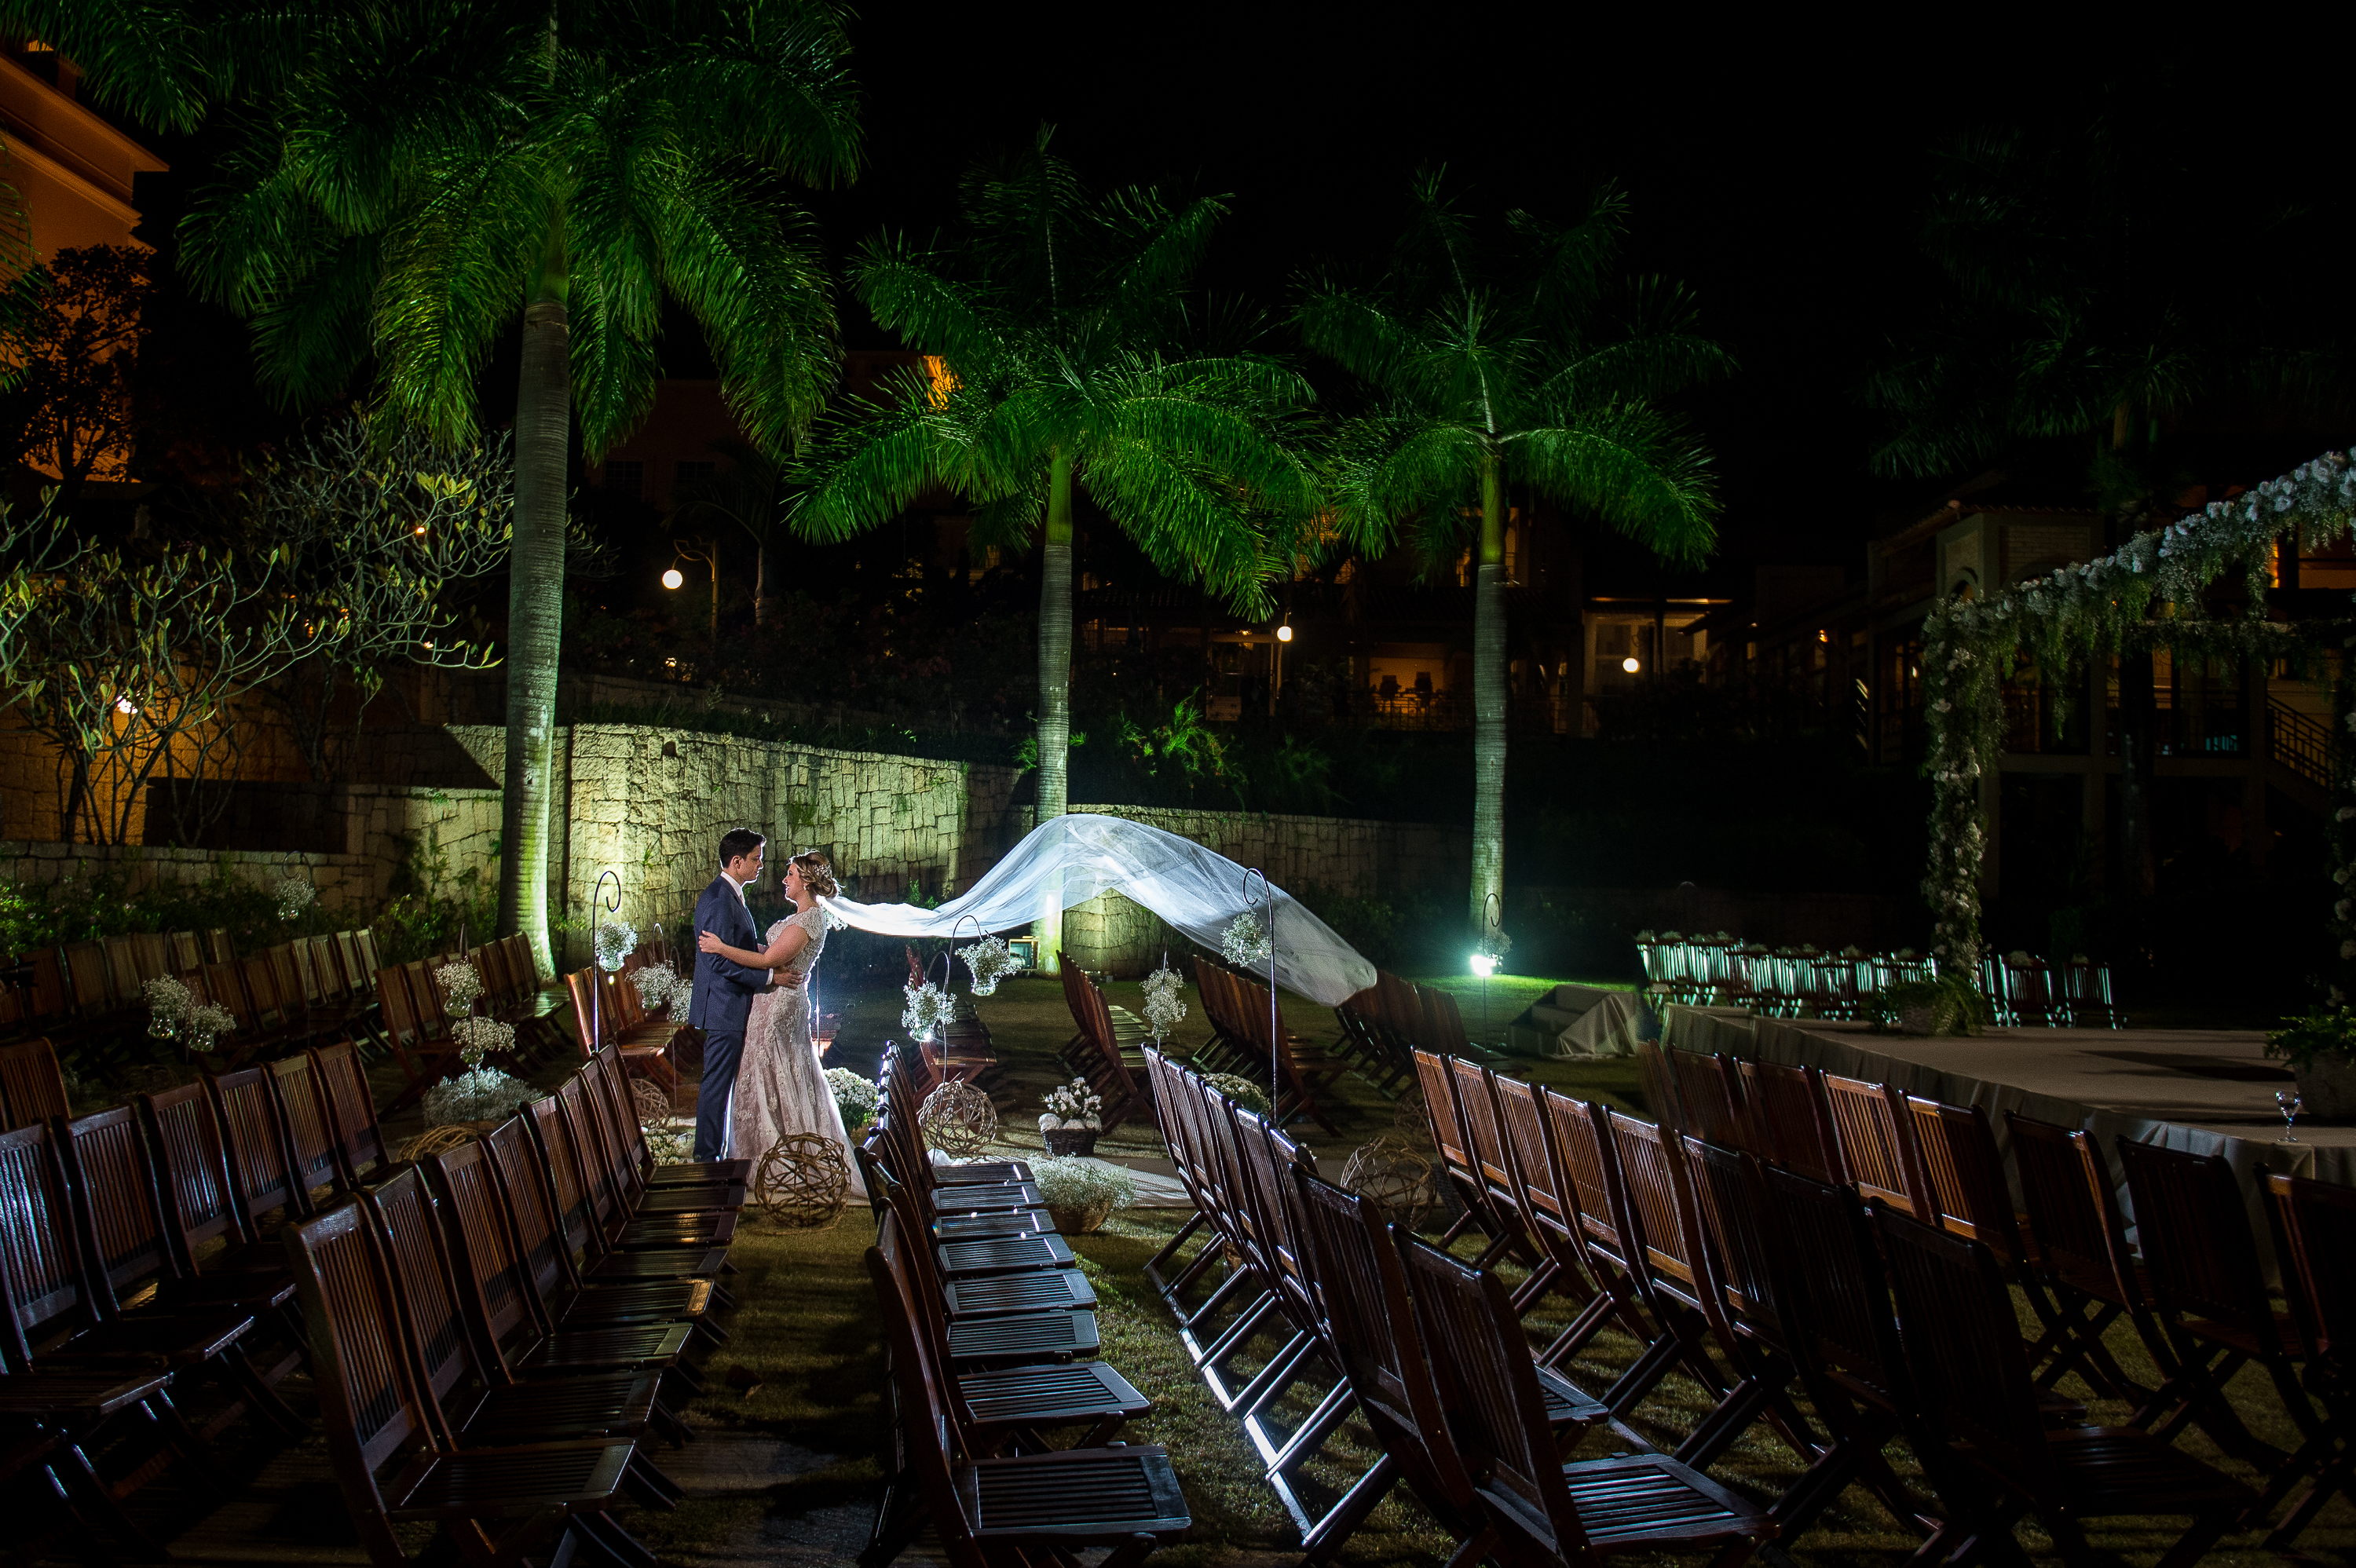 Casamento Rústico Chic no Royal Palm: Juliana e André